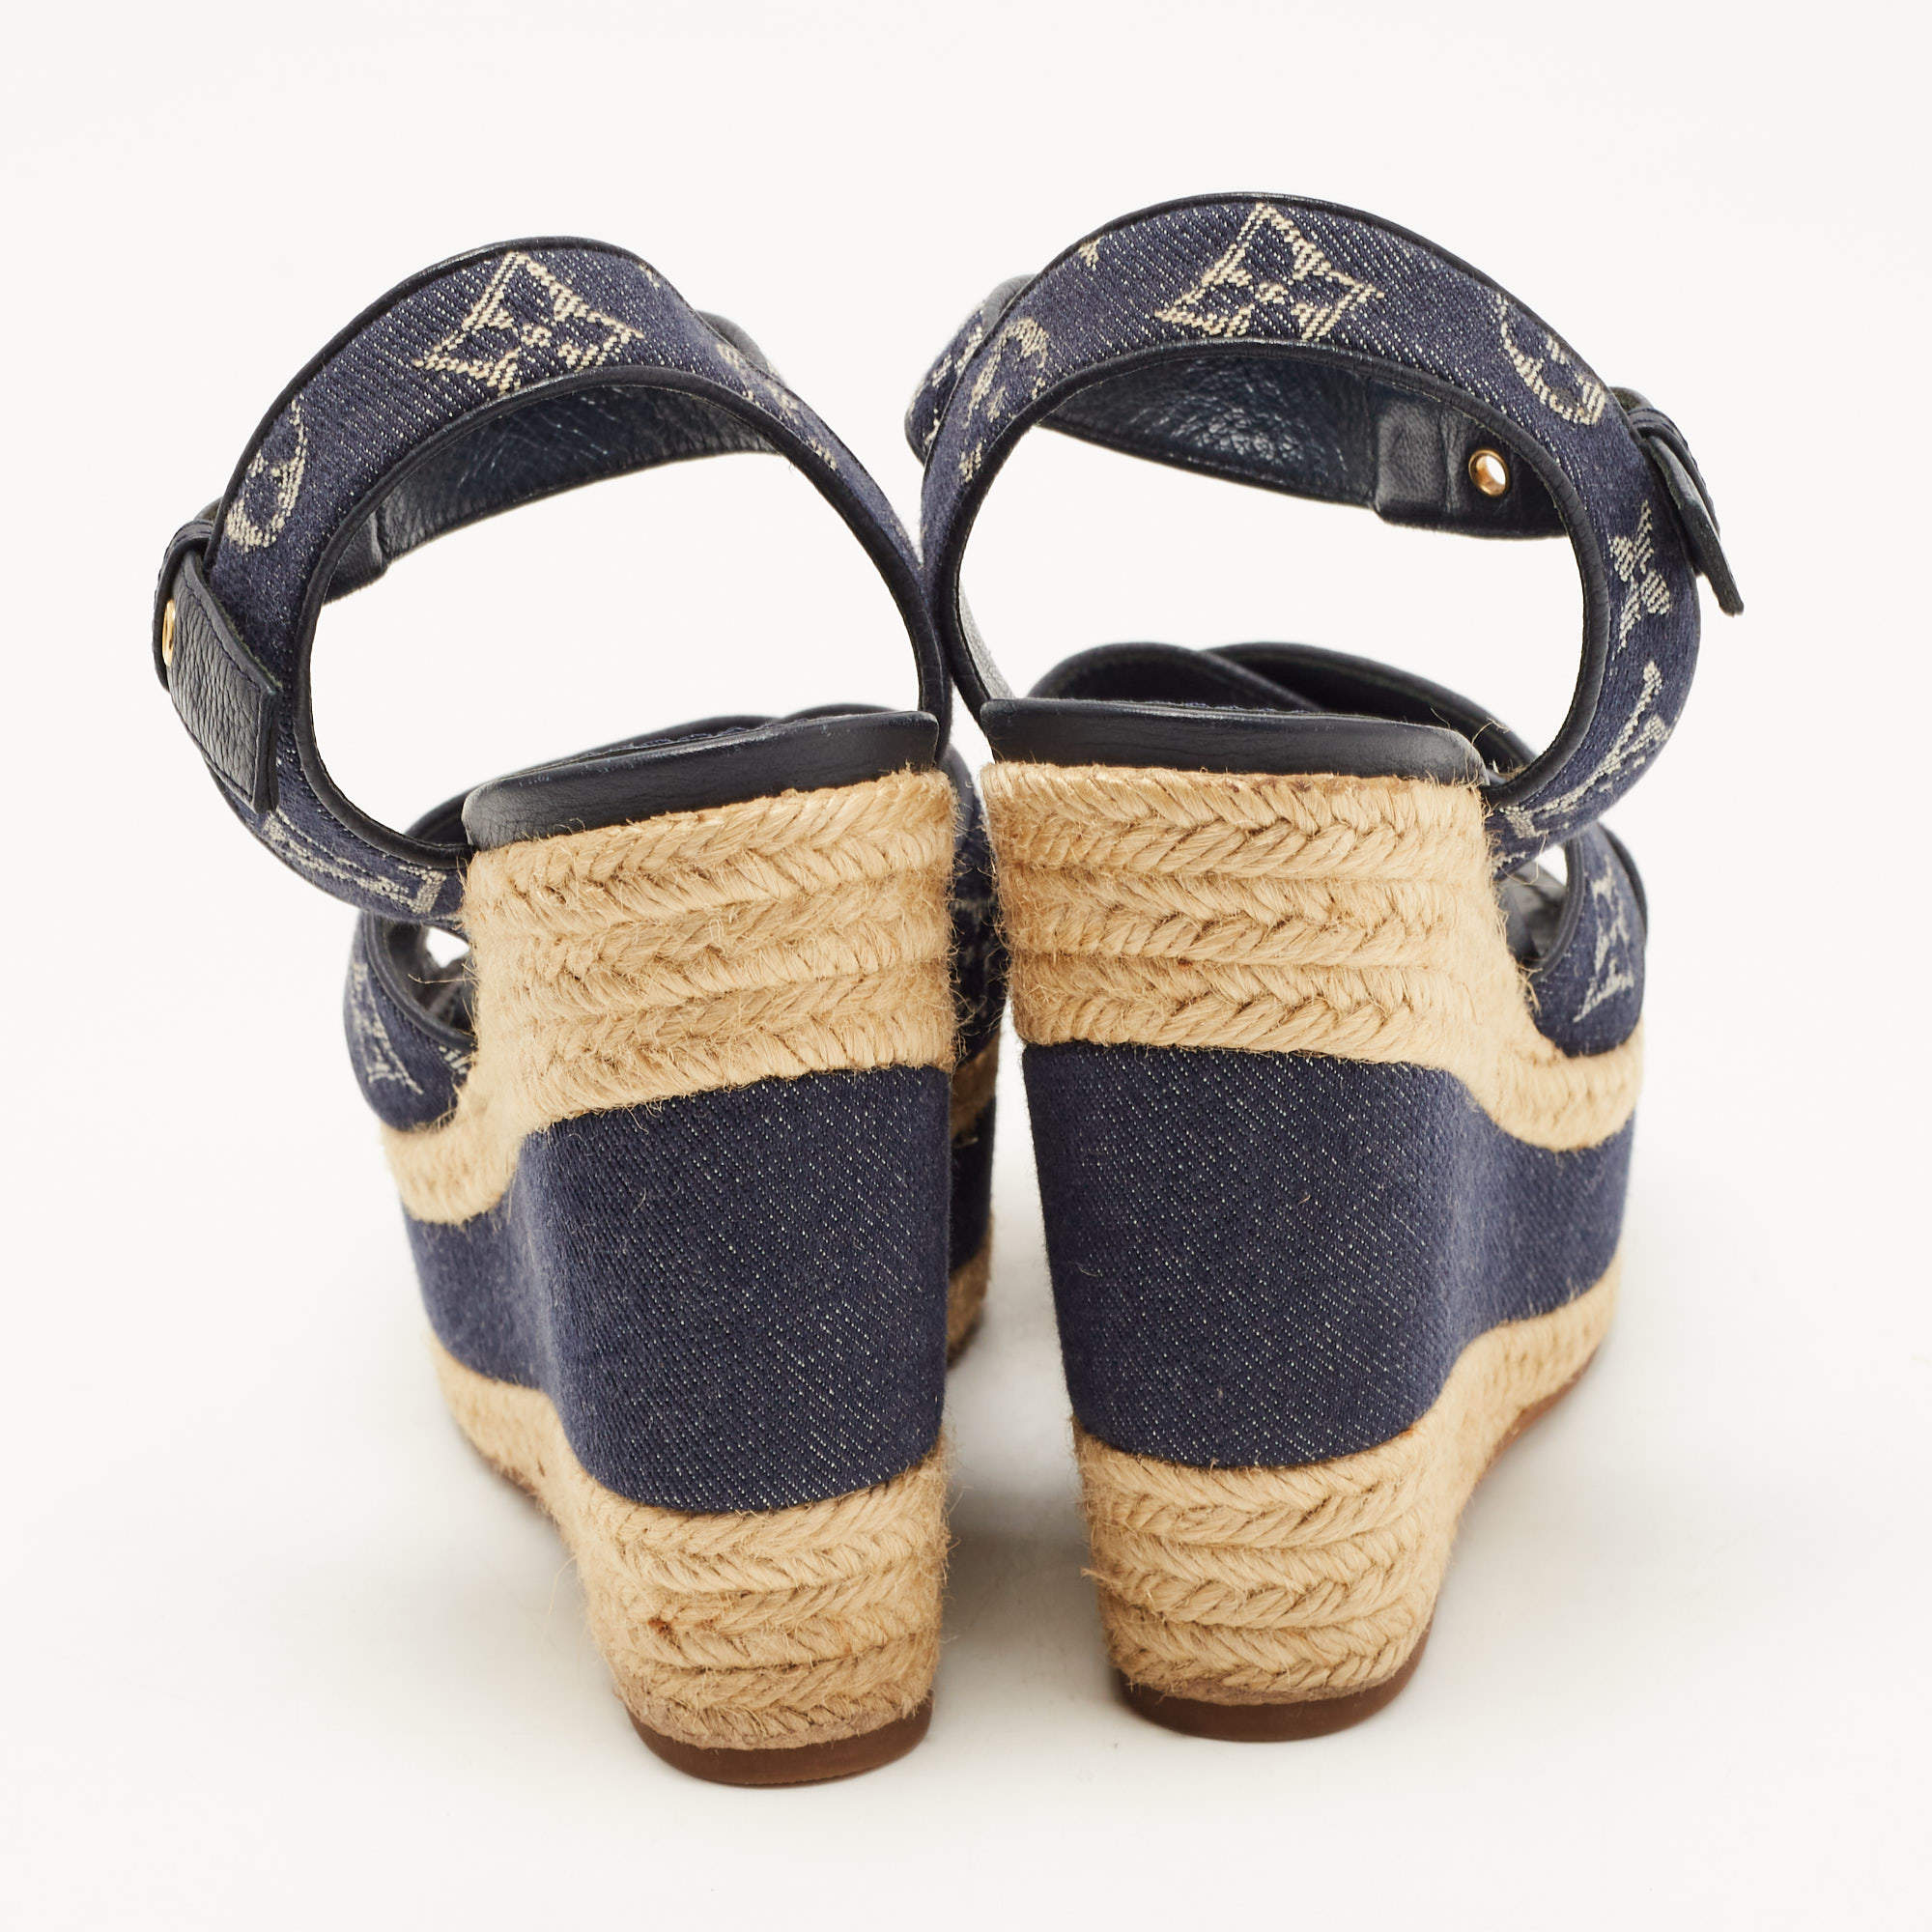 Louis Vuitton Blue Denim Formentera Ankle Strap Platform Wedge Sandals Size  36 Louis Vuitton | The Luxury Closet